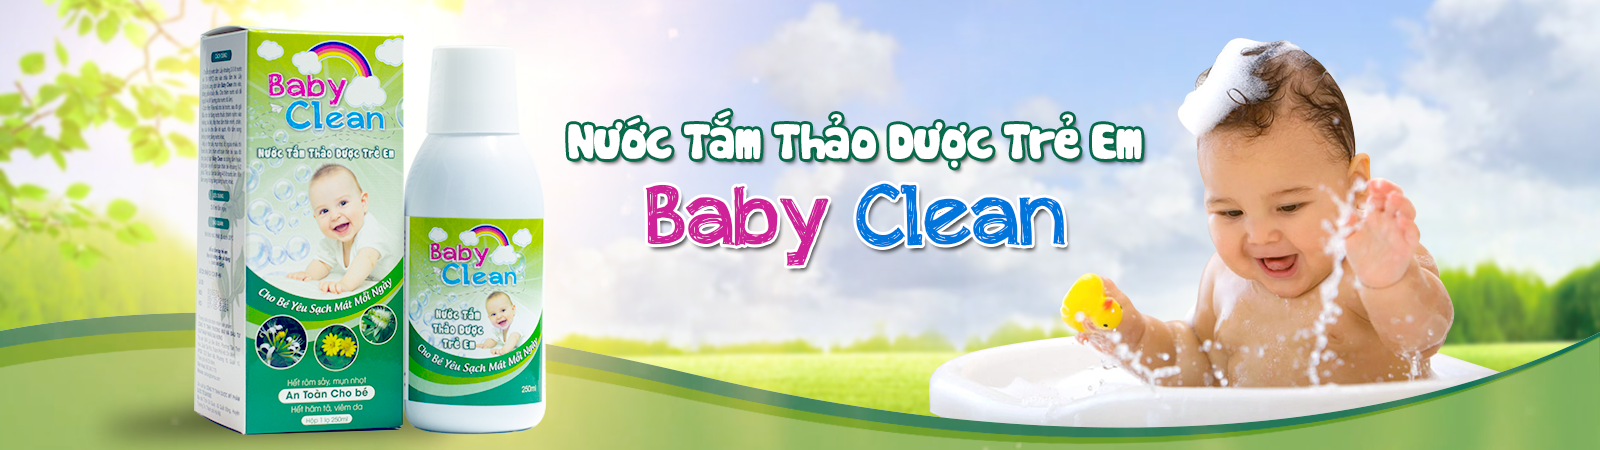 Sữa tắm thảo dược Baby Clean